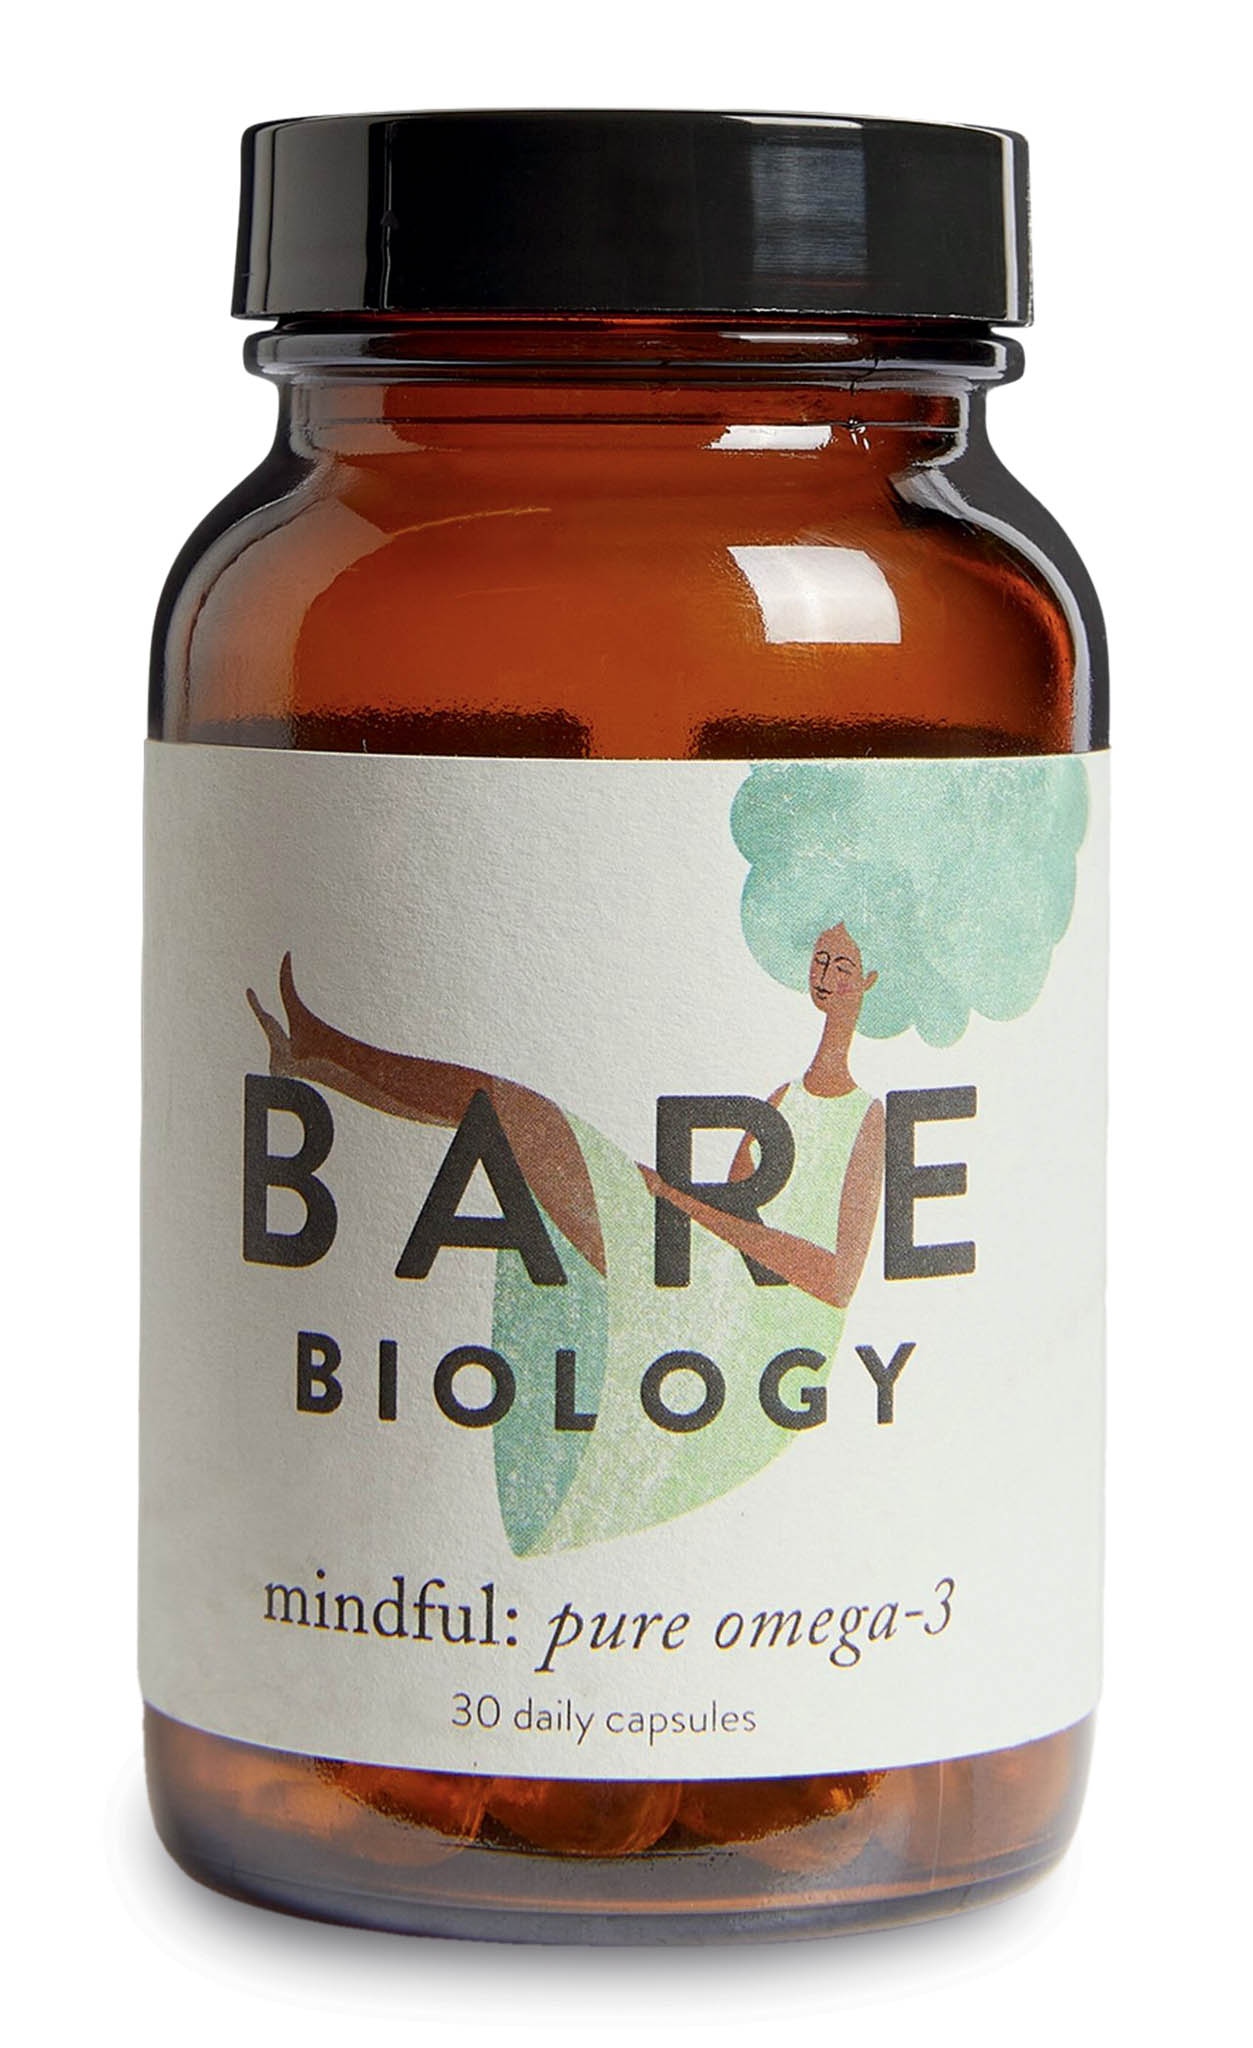 BARE BIOLOGY: Mindful